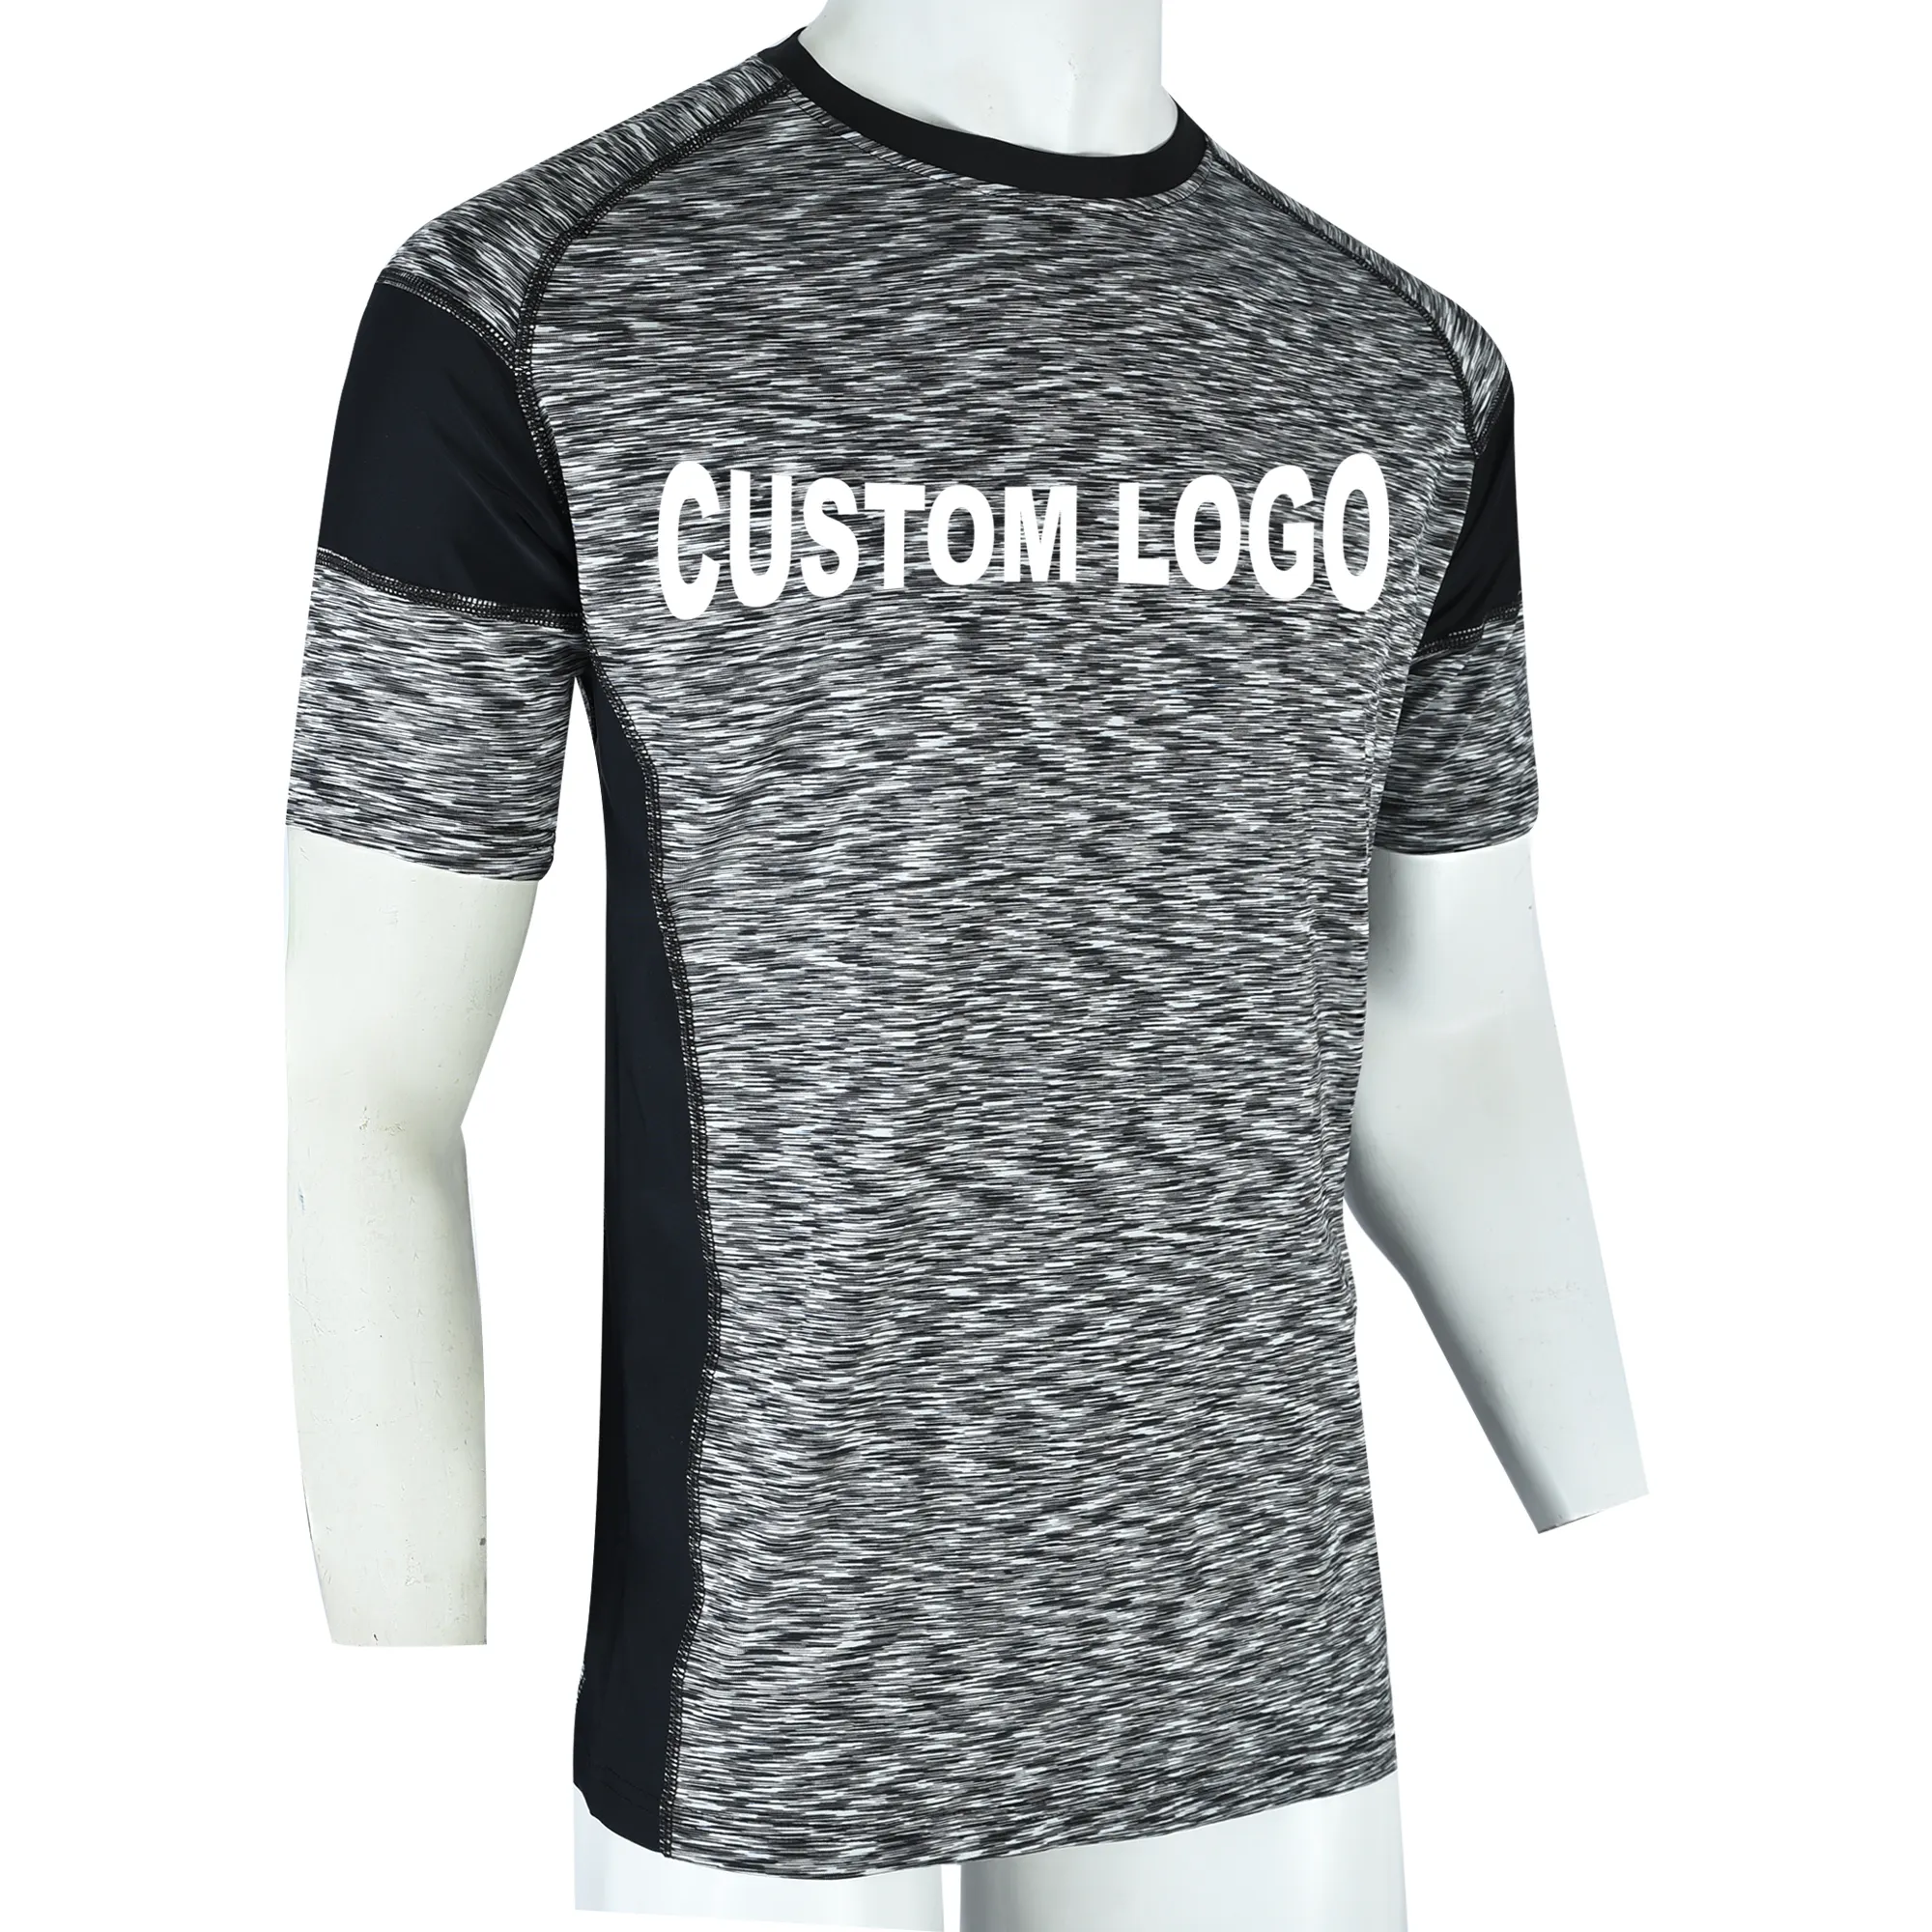 Homens Ginásio Personalizado Camiseta de Treino, Muito Elástico para um confortável ajuste atlético T-shirt Fazer O Seu Próprio Design do Paquistão